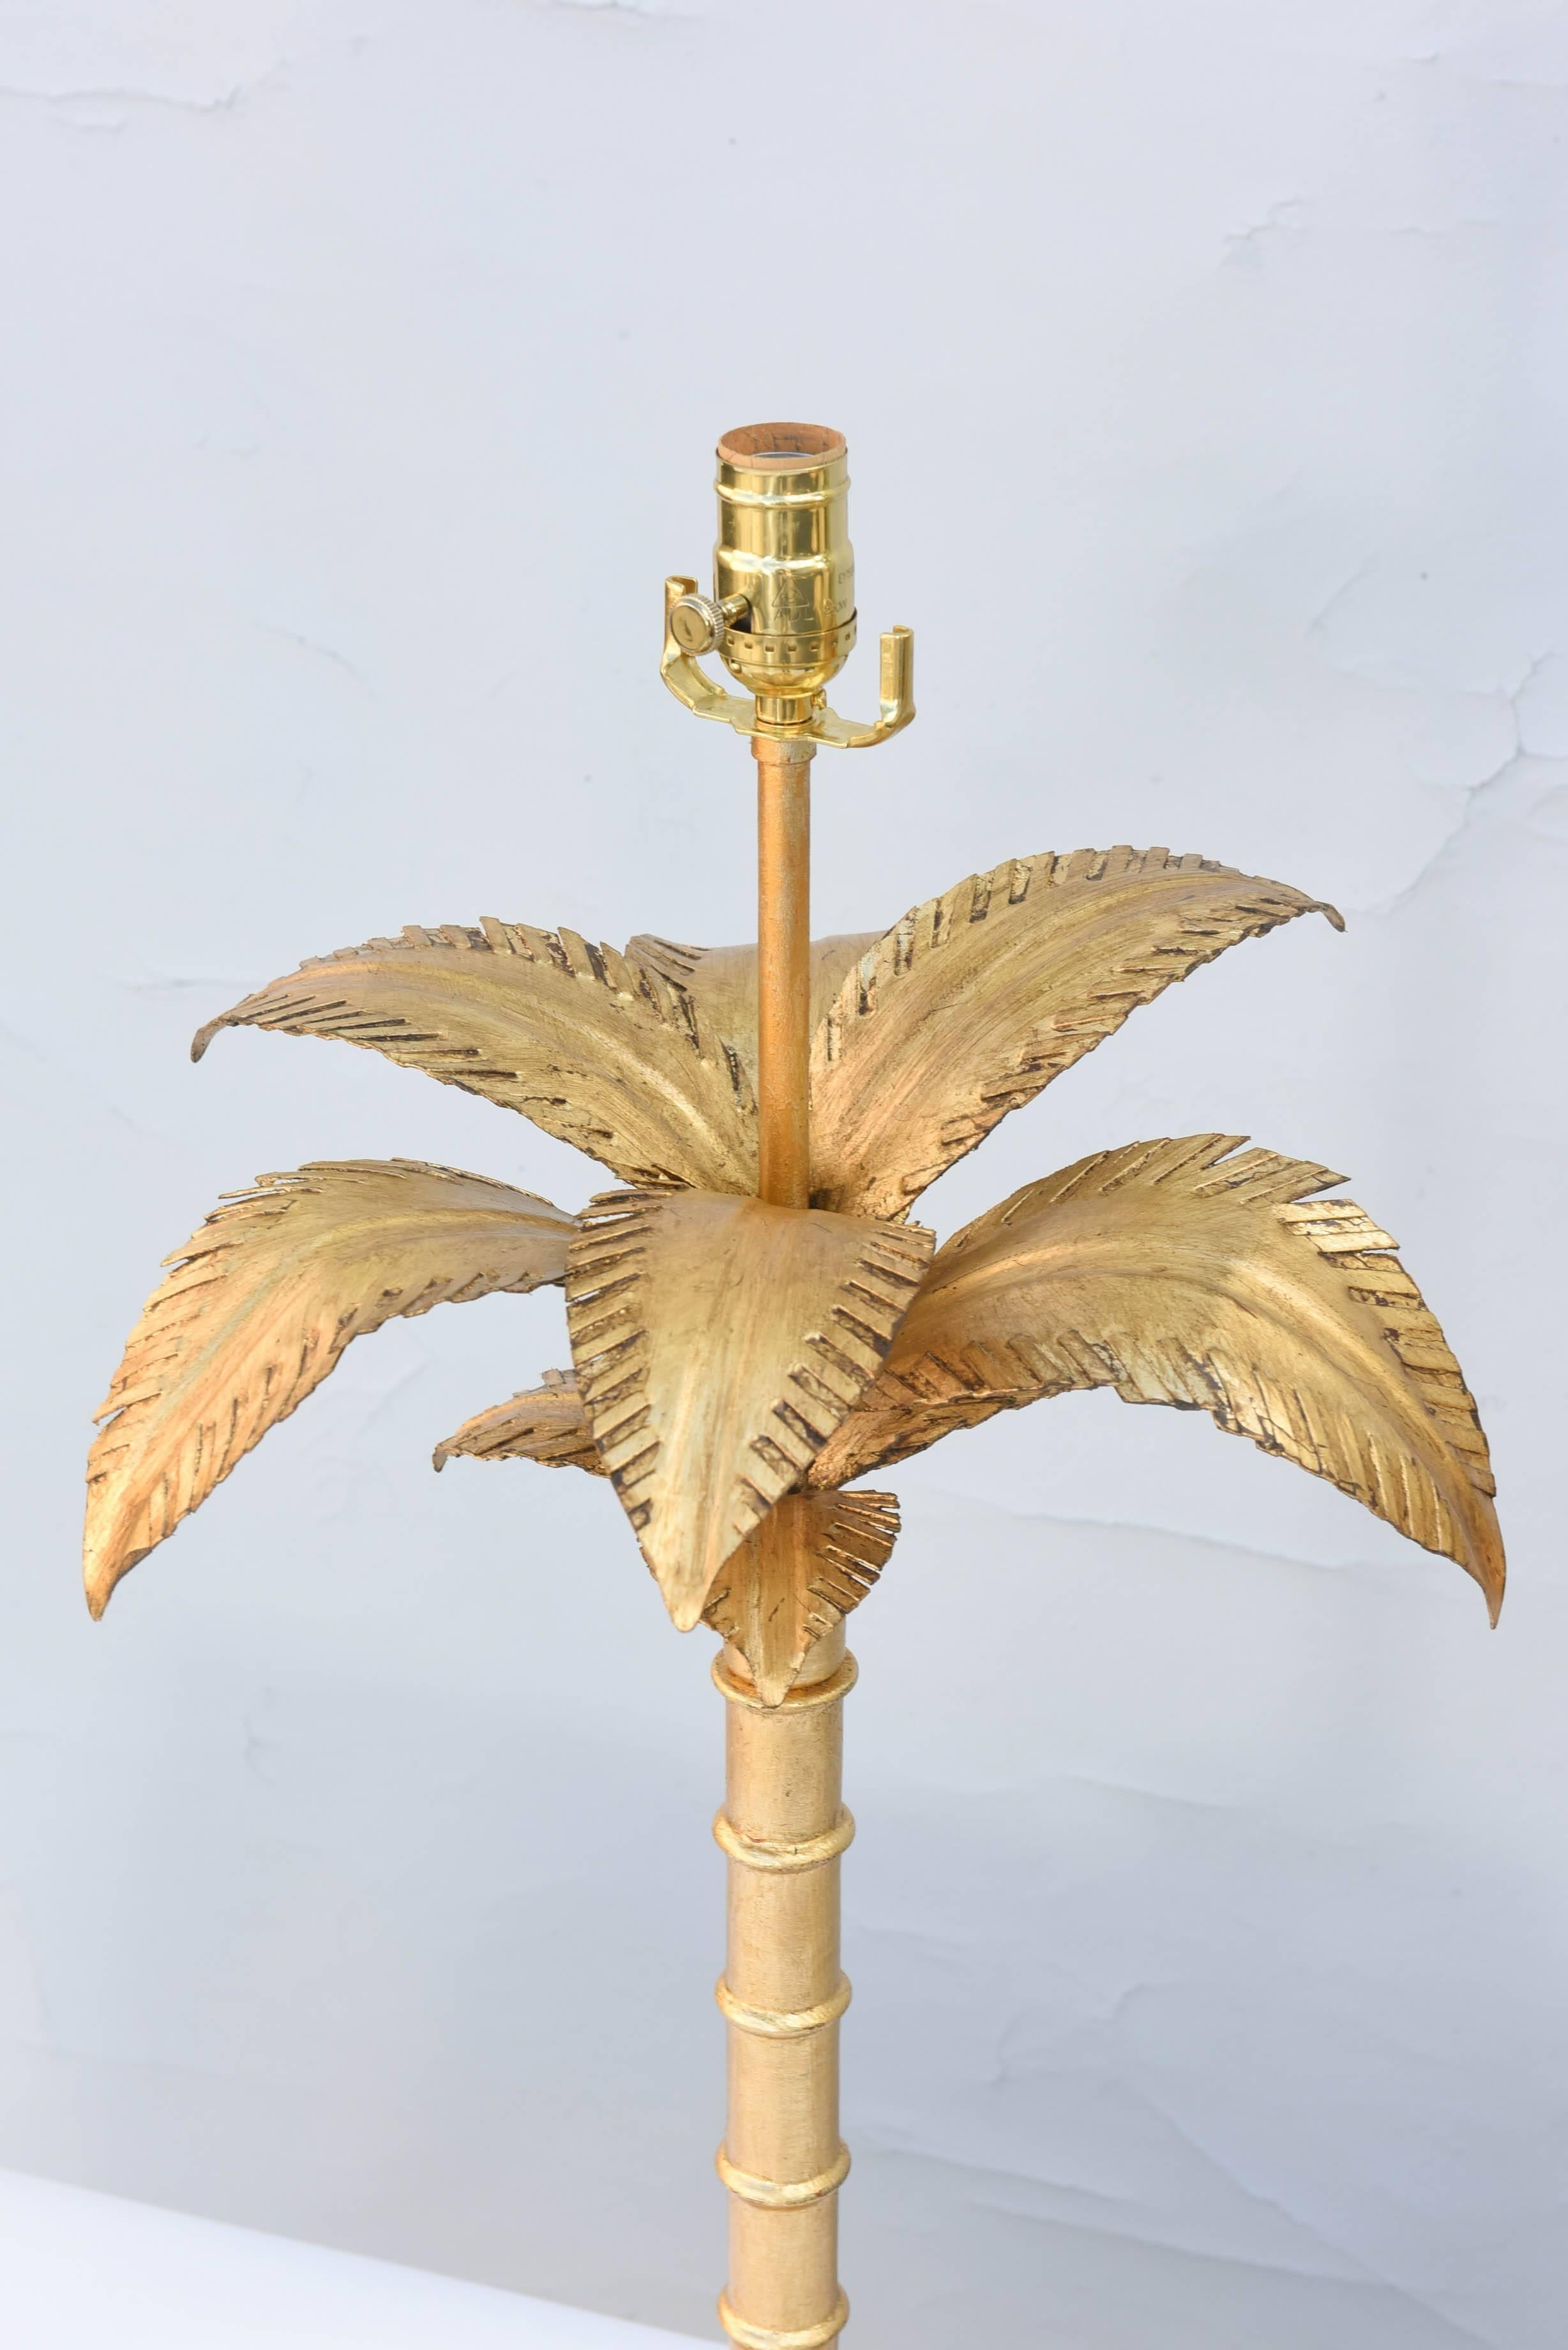 Paire de lampes, en fer doré, chacune ayant un dais bien articulé de feuilles, sur un tronc sectionné, sur une base graduée, posée sur un socle rond. 

Stock ID : D9270